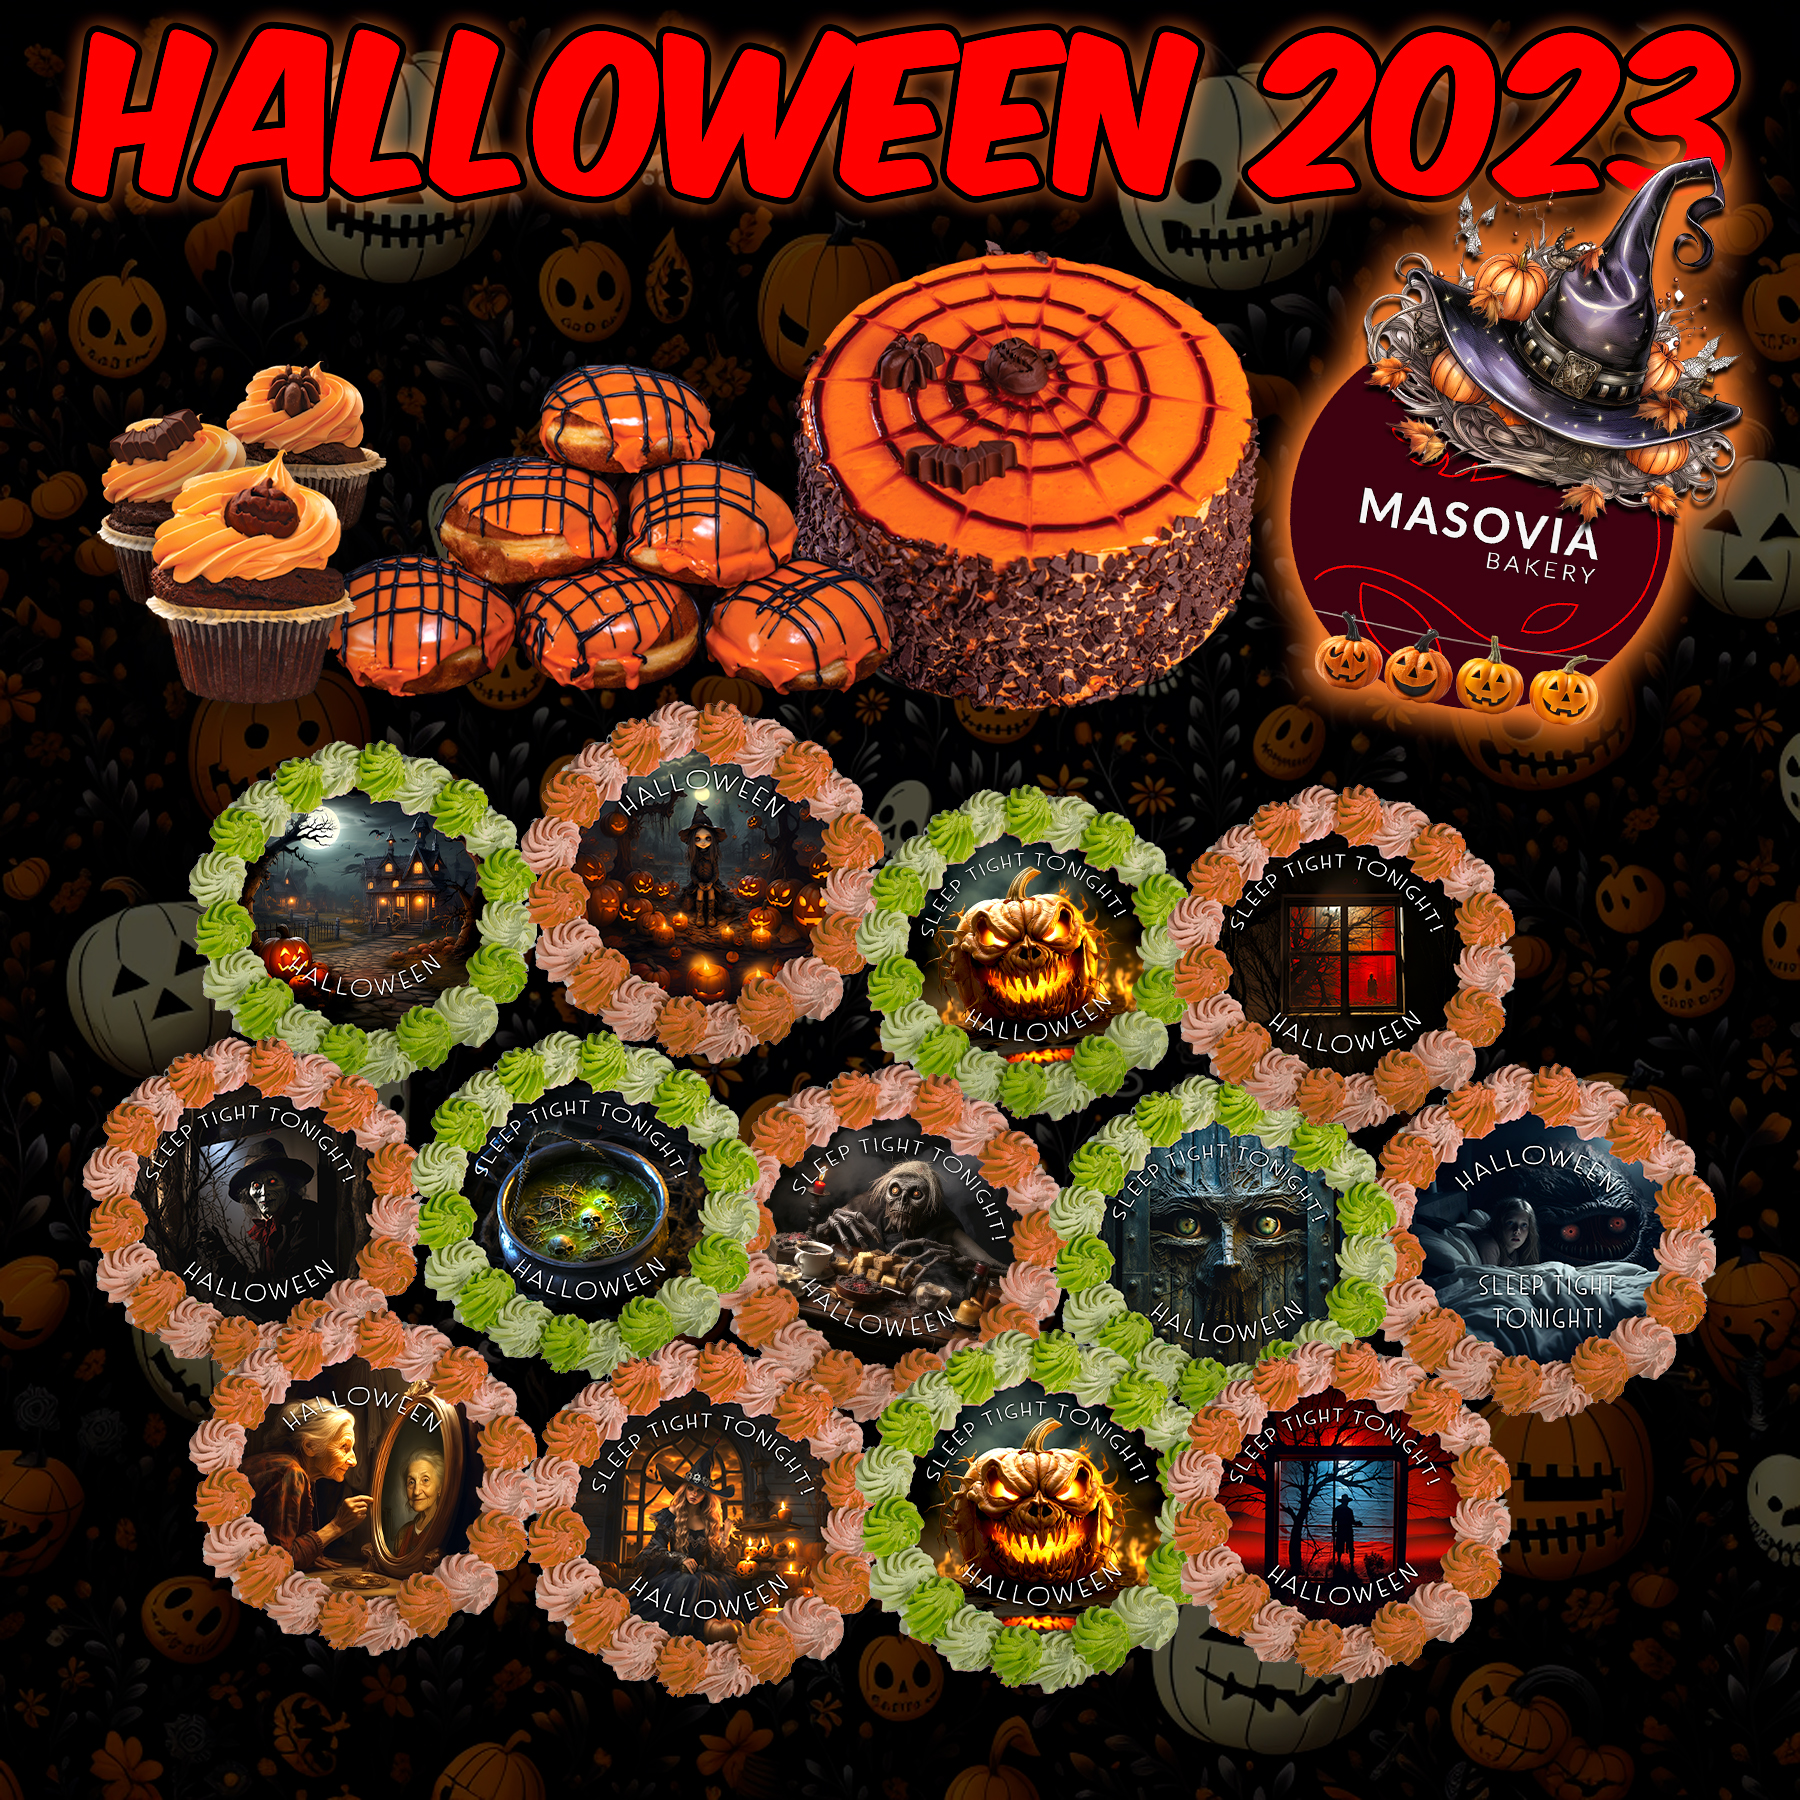 Halloween Cakes at Mazowsze and Masovia Craft Bakery at 2023